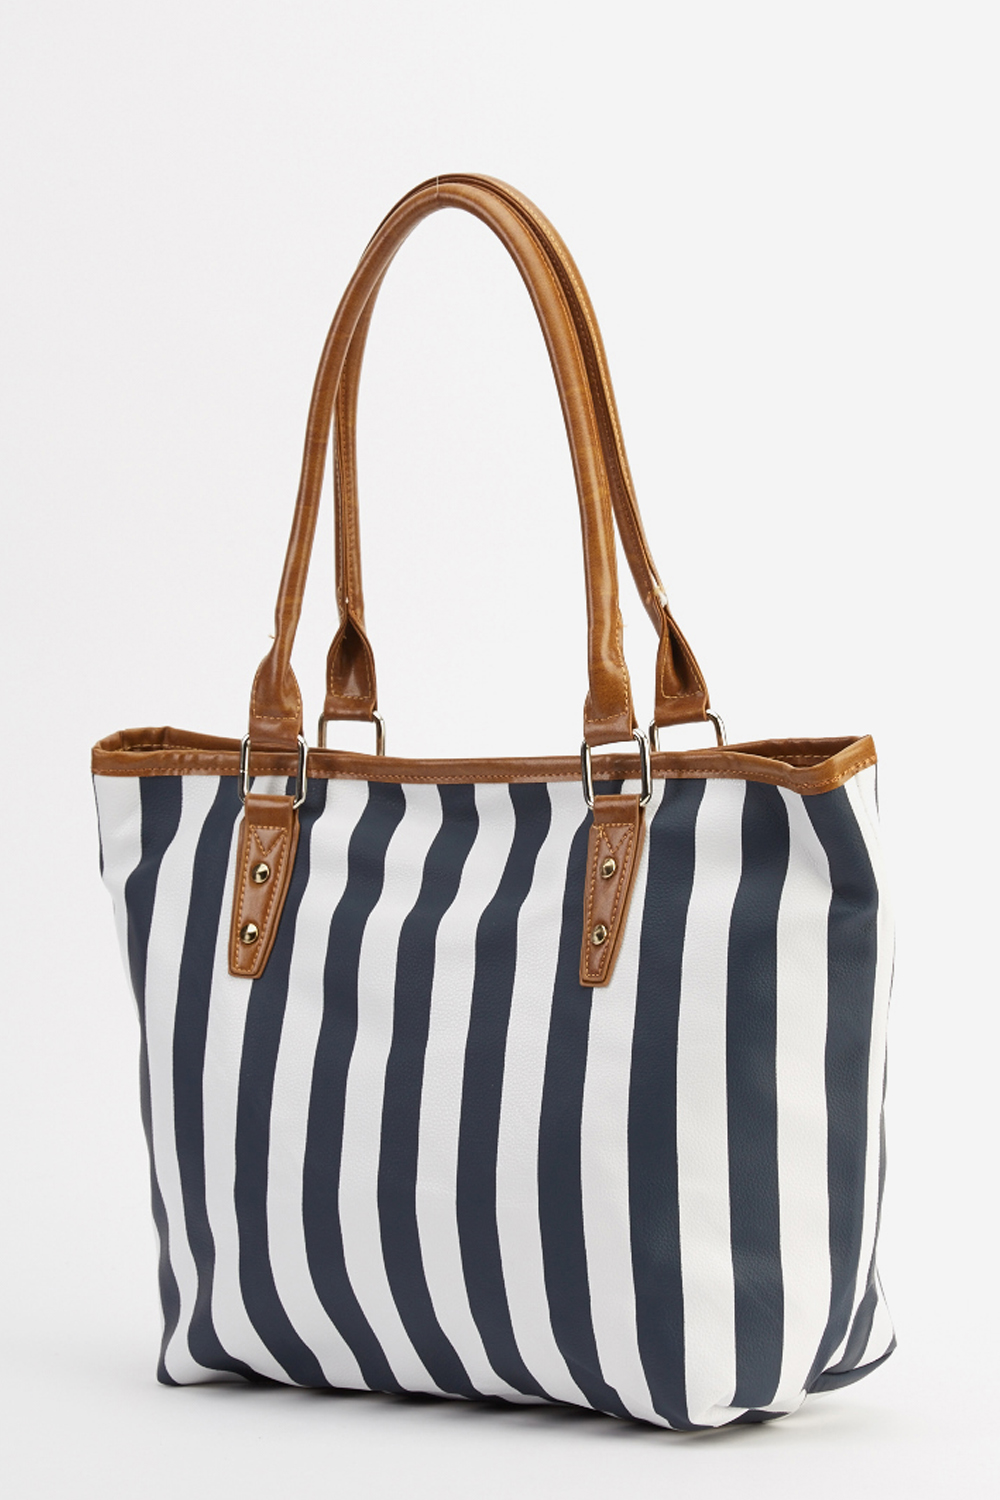 Stripe Printed Bag - Just $7